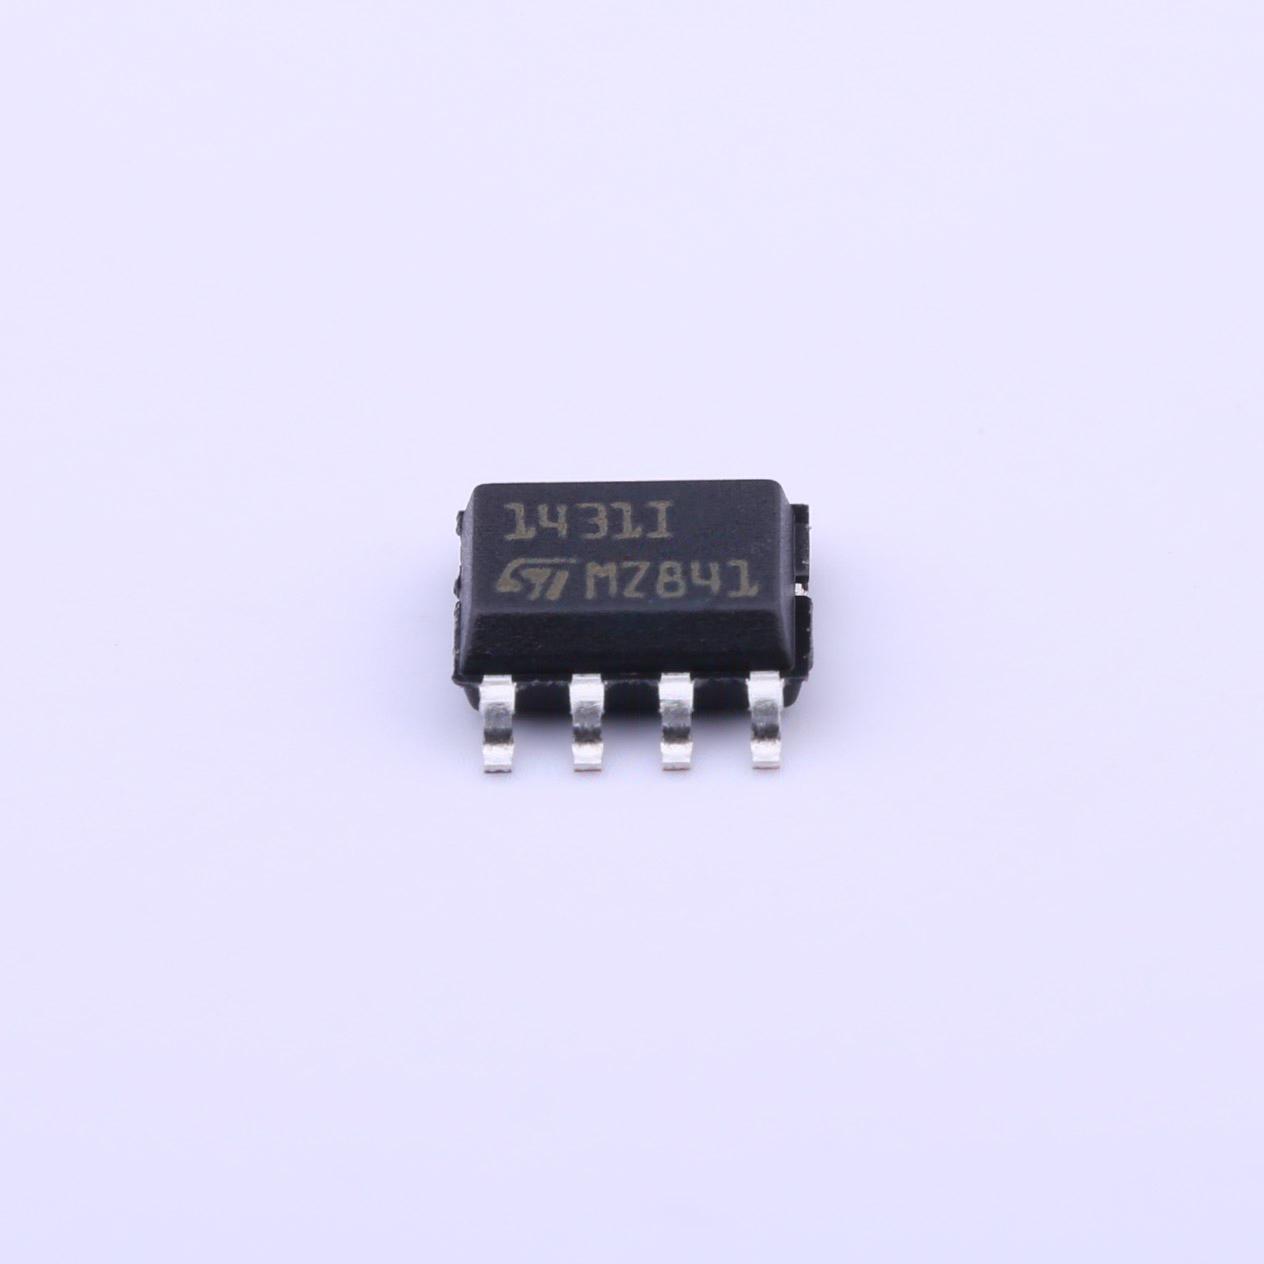 TL1431IDT(2.5V~36V 100mA)电压基准芯片原装现货